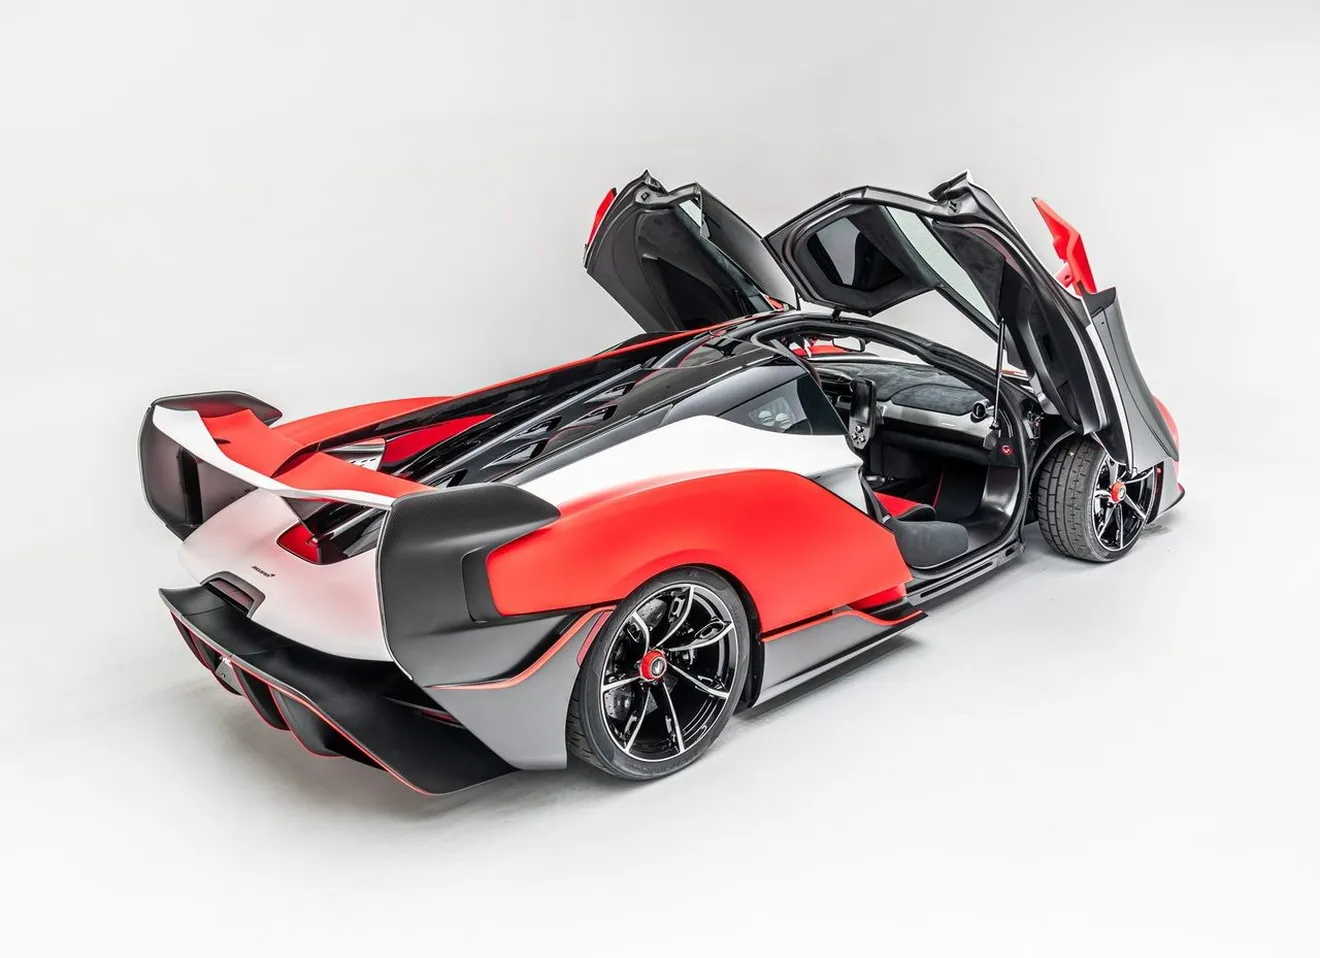 Uno de los exclusivos McLaren Sabre ya está disponible en el mercado de usados